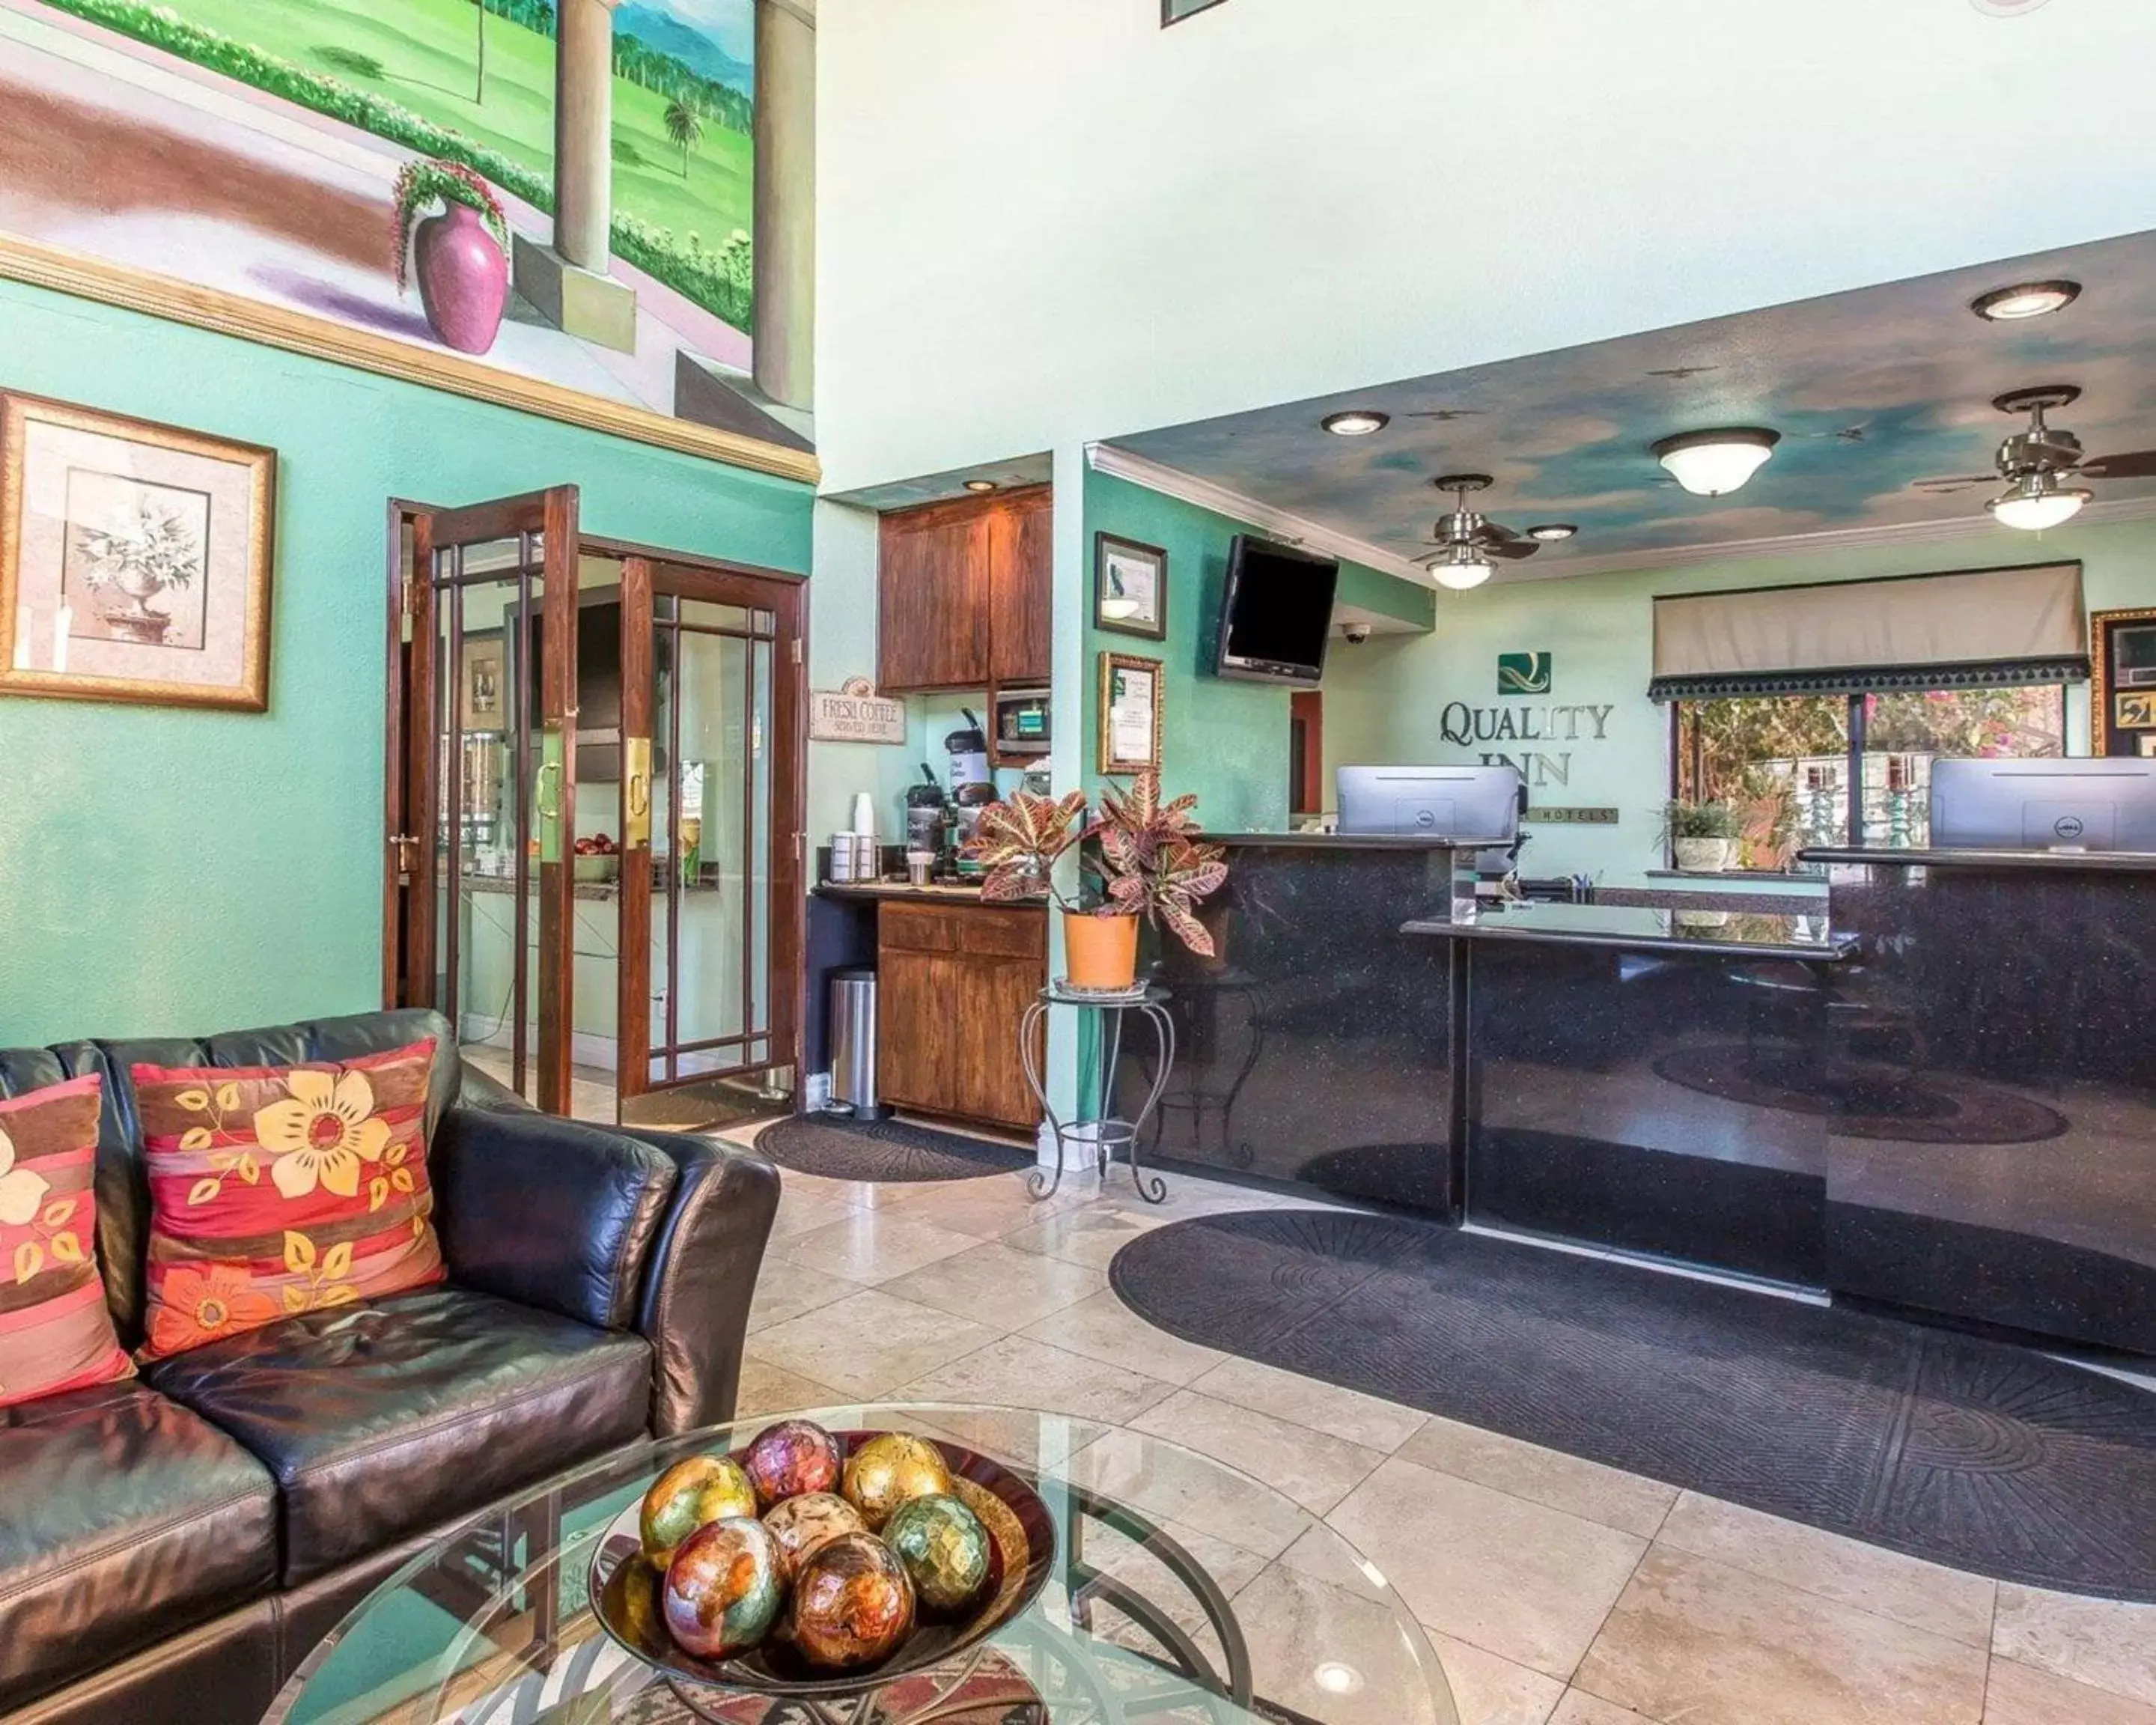 Lobby or reception, Lobby/Reception in Quality Inn Hemet - San Jacinto